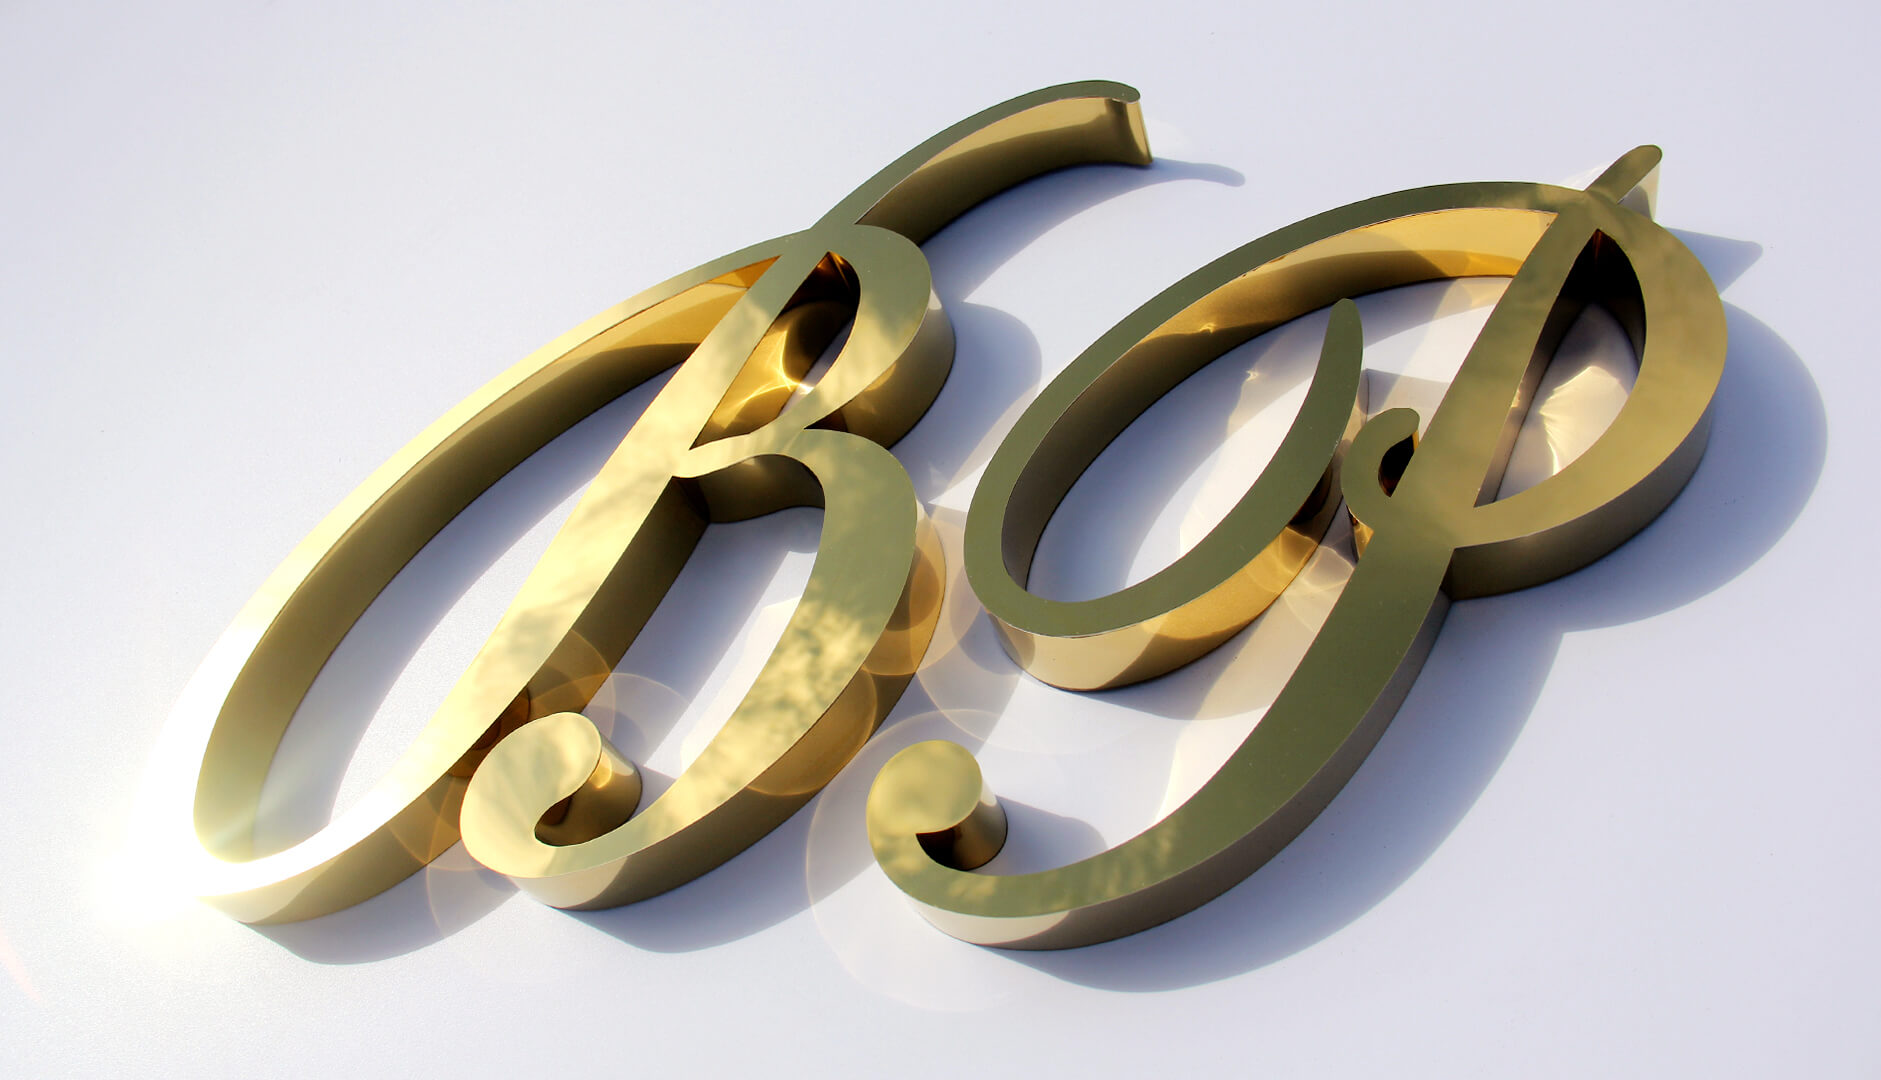 Letras B y P en oro - Letras B y P doradas, artísticas, únicas. Fabricado en acero inoxidable.